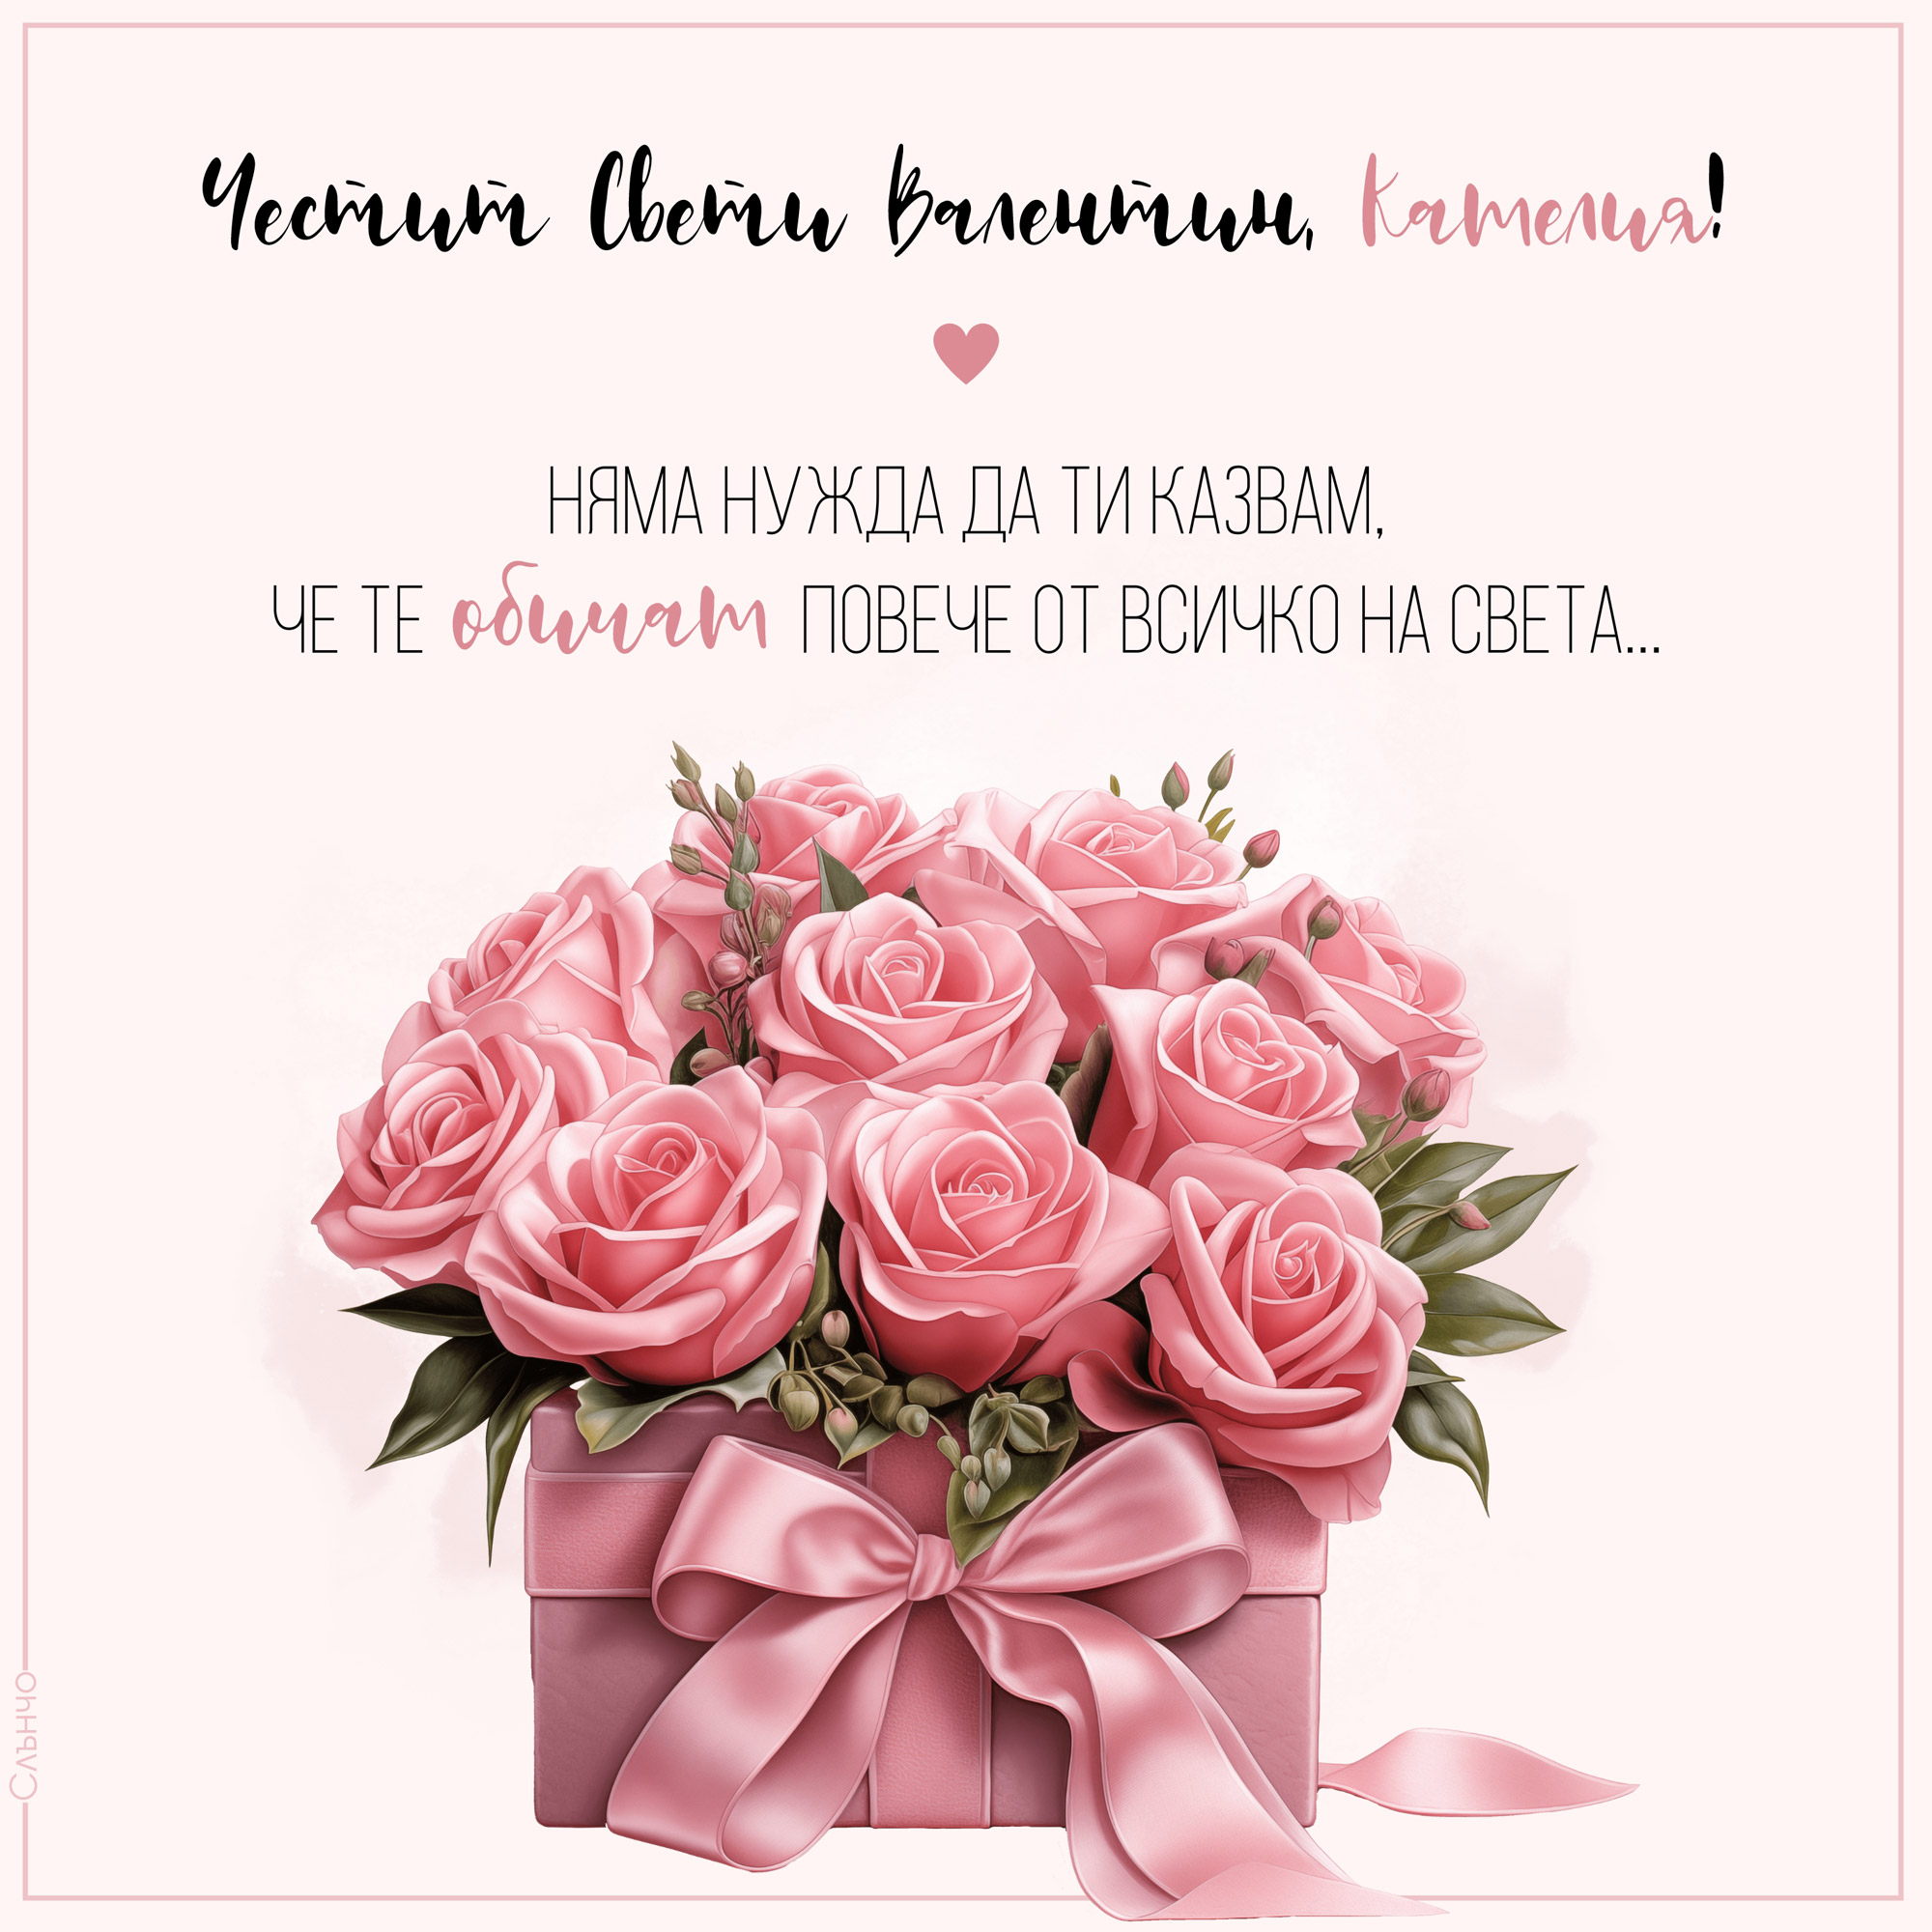 Честит Свети Валентин с розови цветя, Картички за Свети Валентин, персонализирани виртуални картички, слънчо обичкам те, картички с име, картички за специален човек, картички за любим човек, картички за жена, честит рожден ден за жена